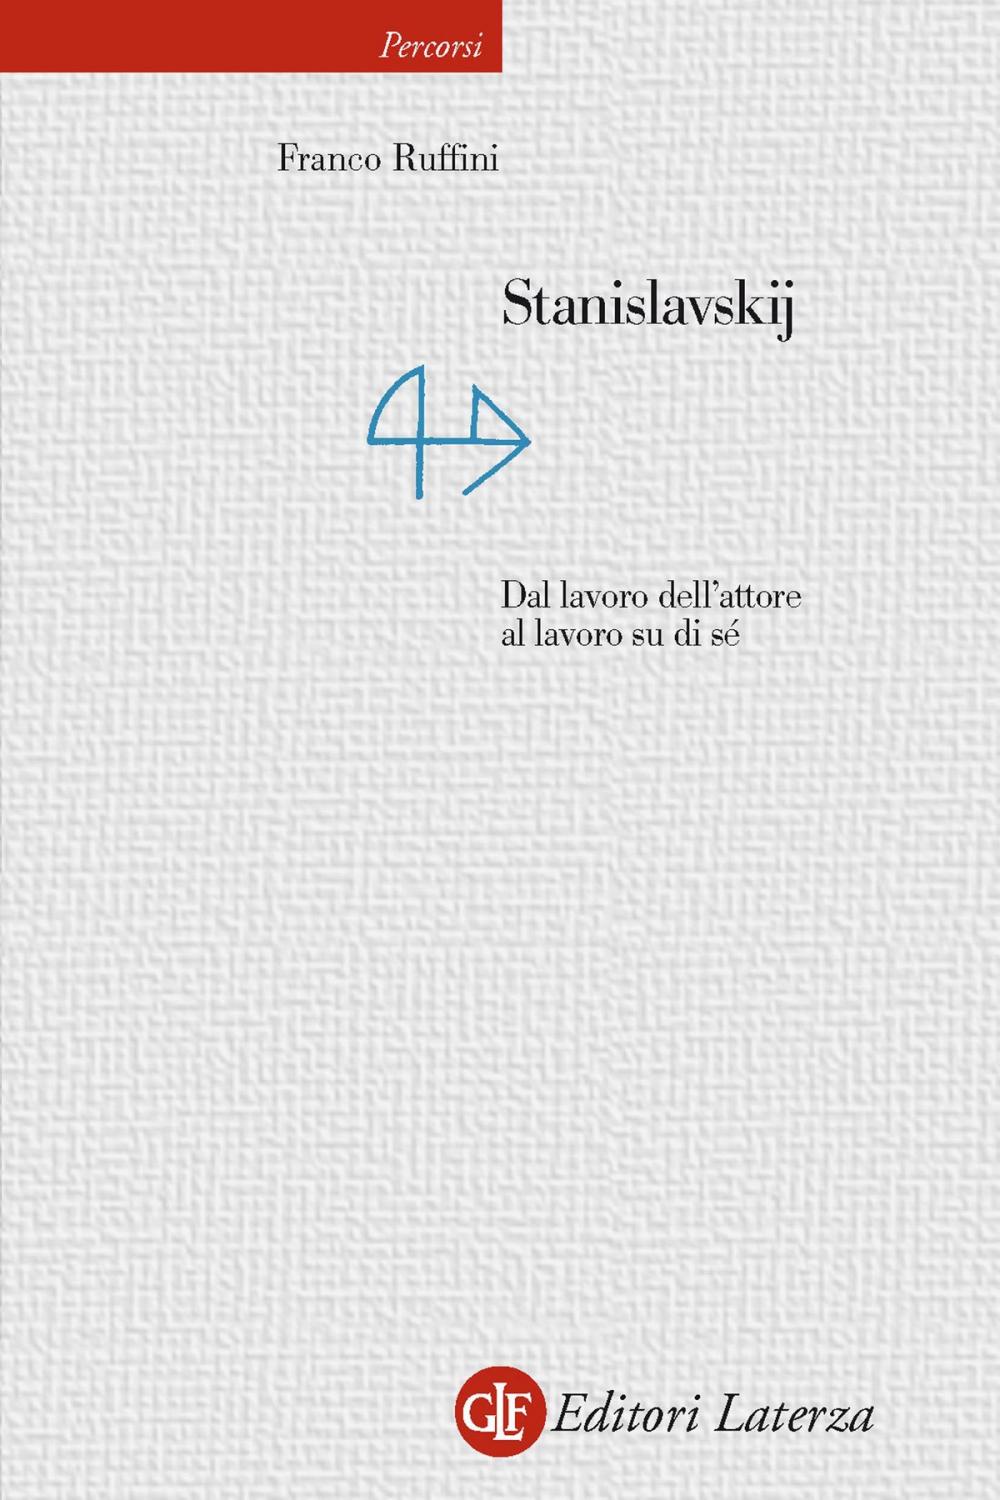 Big bigCover of Stanislavskij